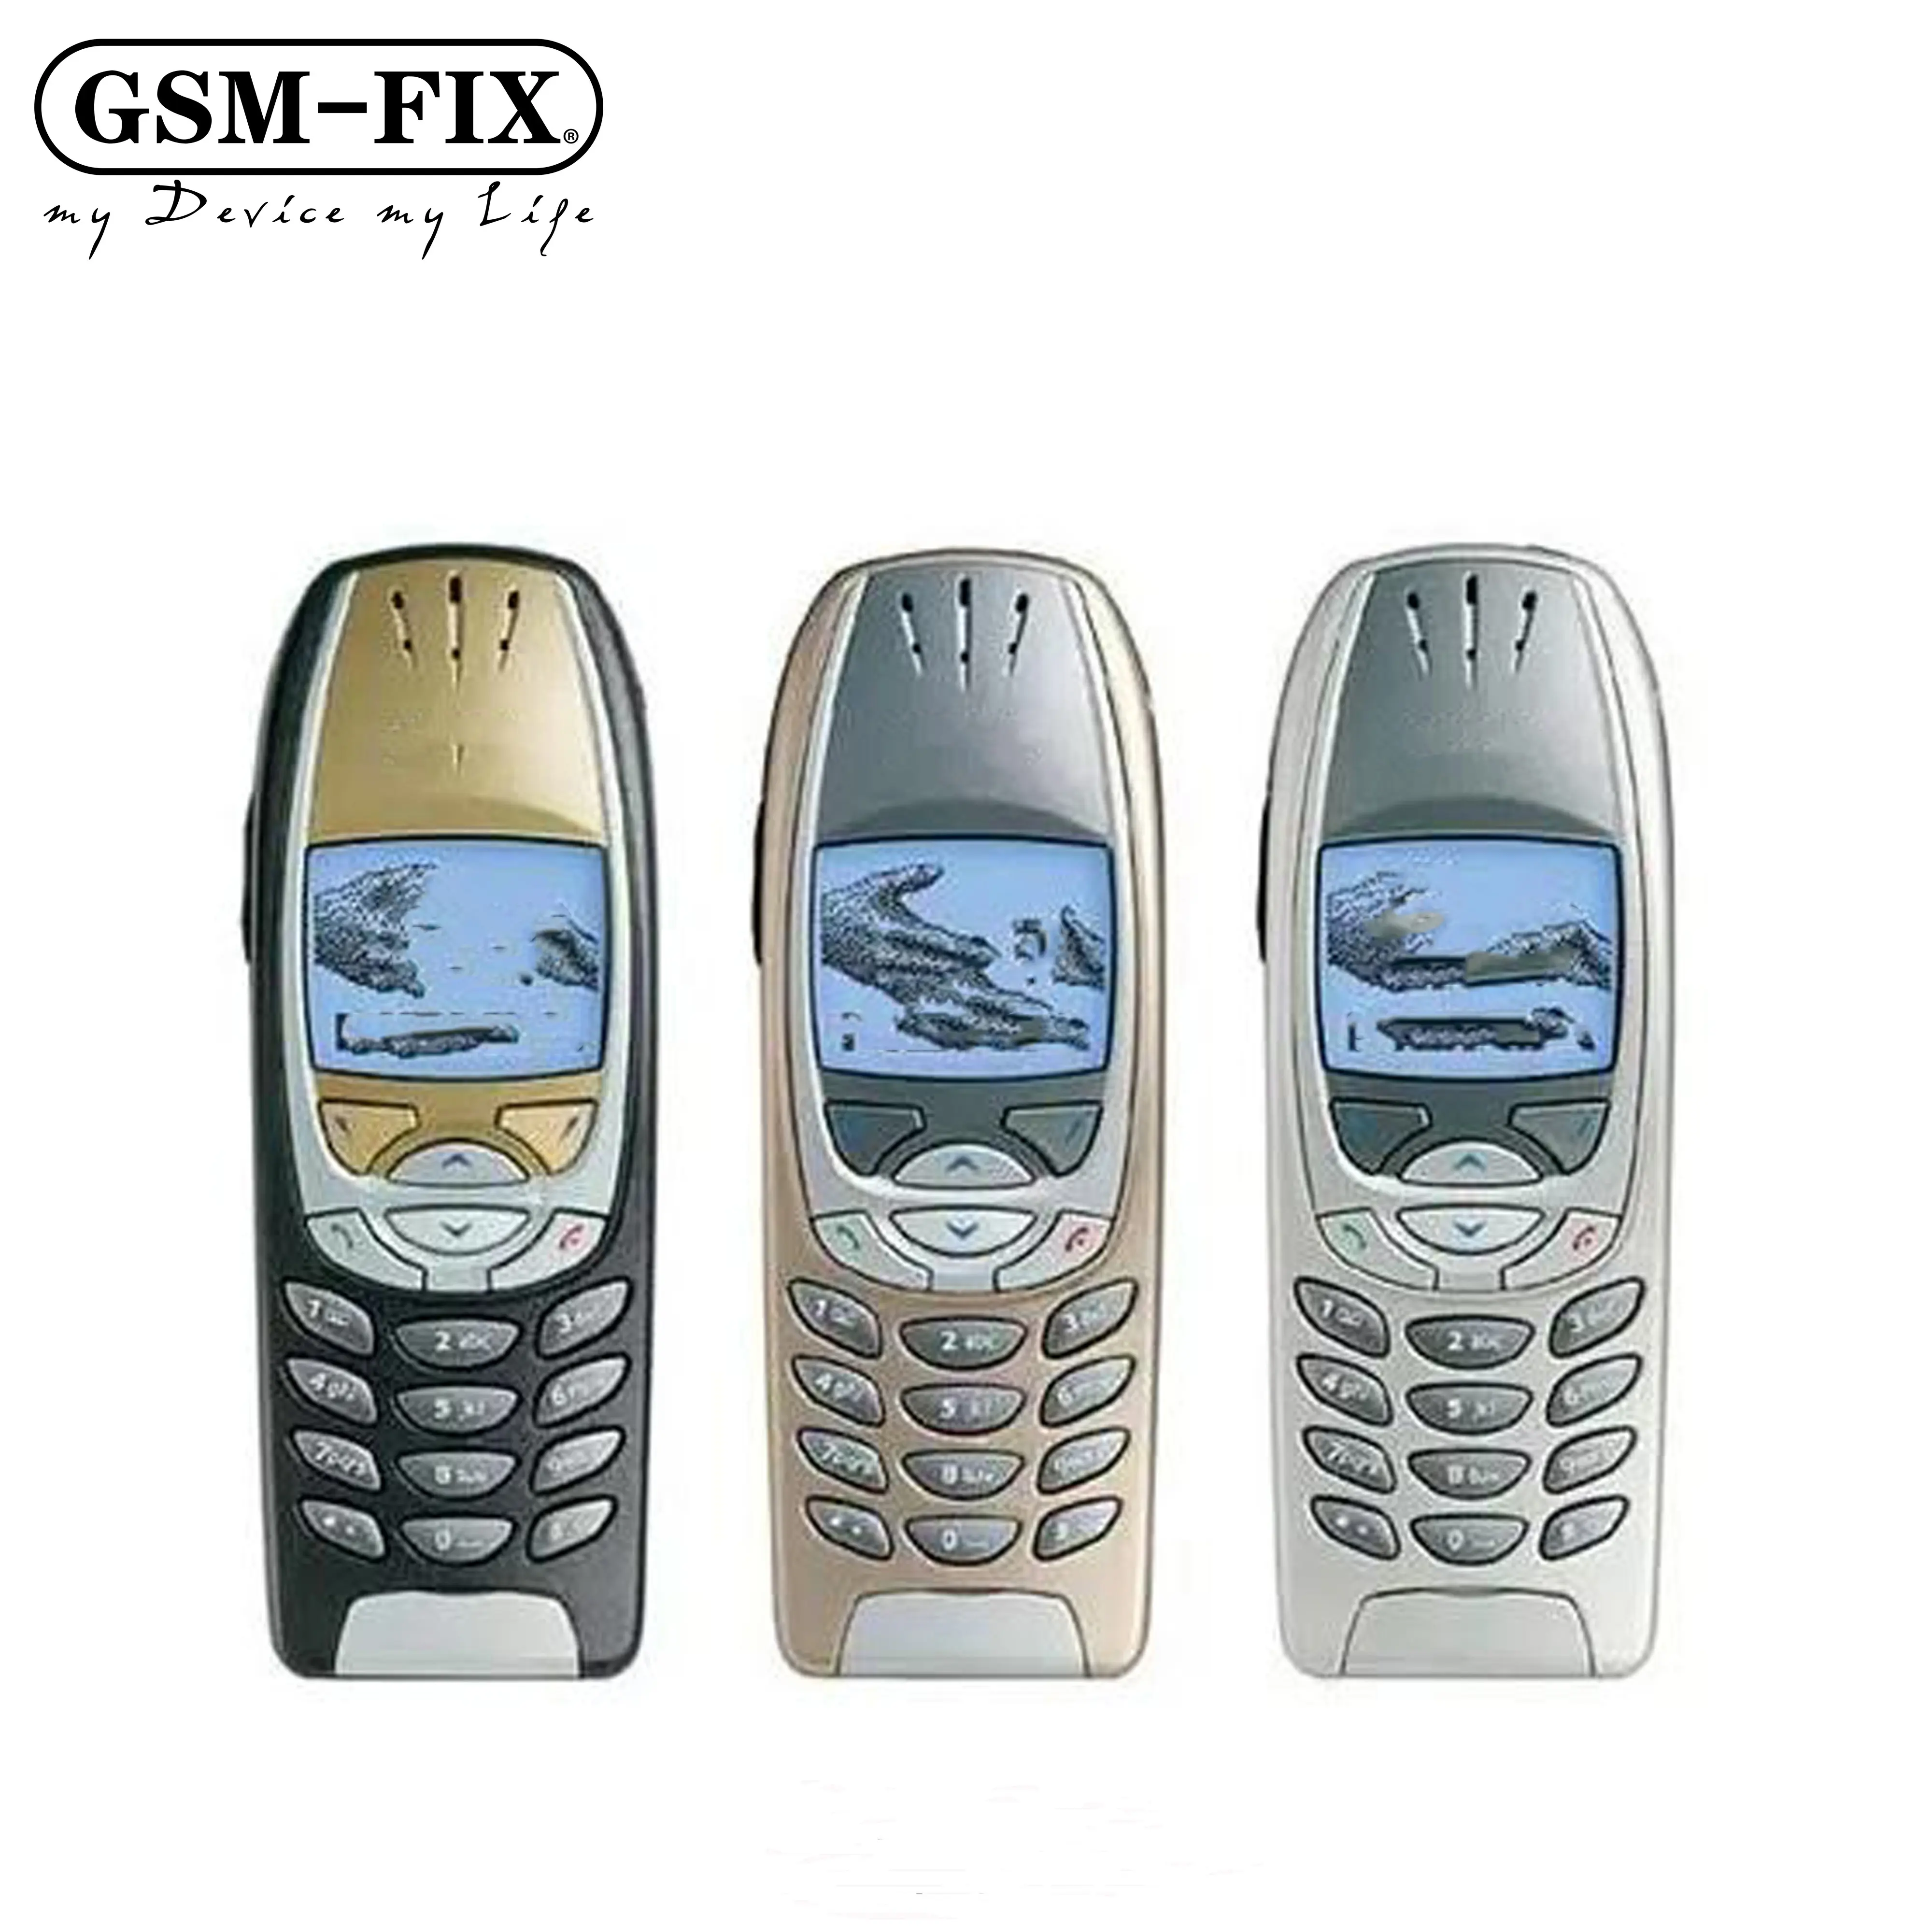 GSM-FIX nokia 6310i unnokia unnokia 6310i unnokia 6310I unnokia